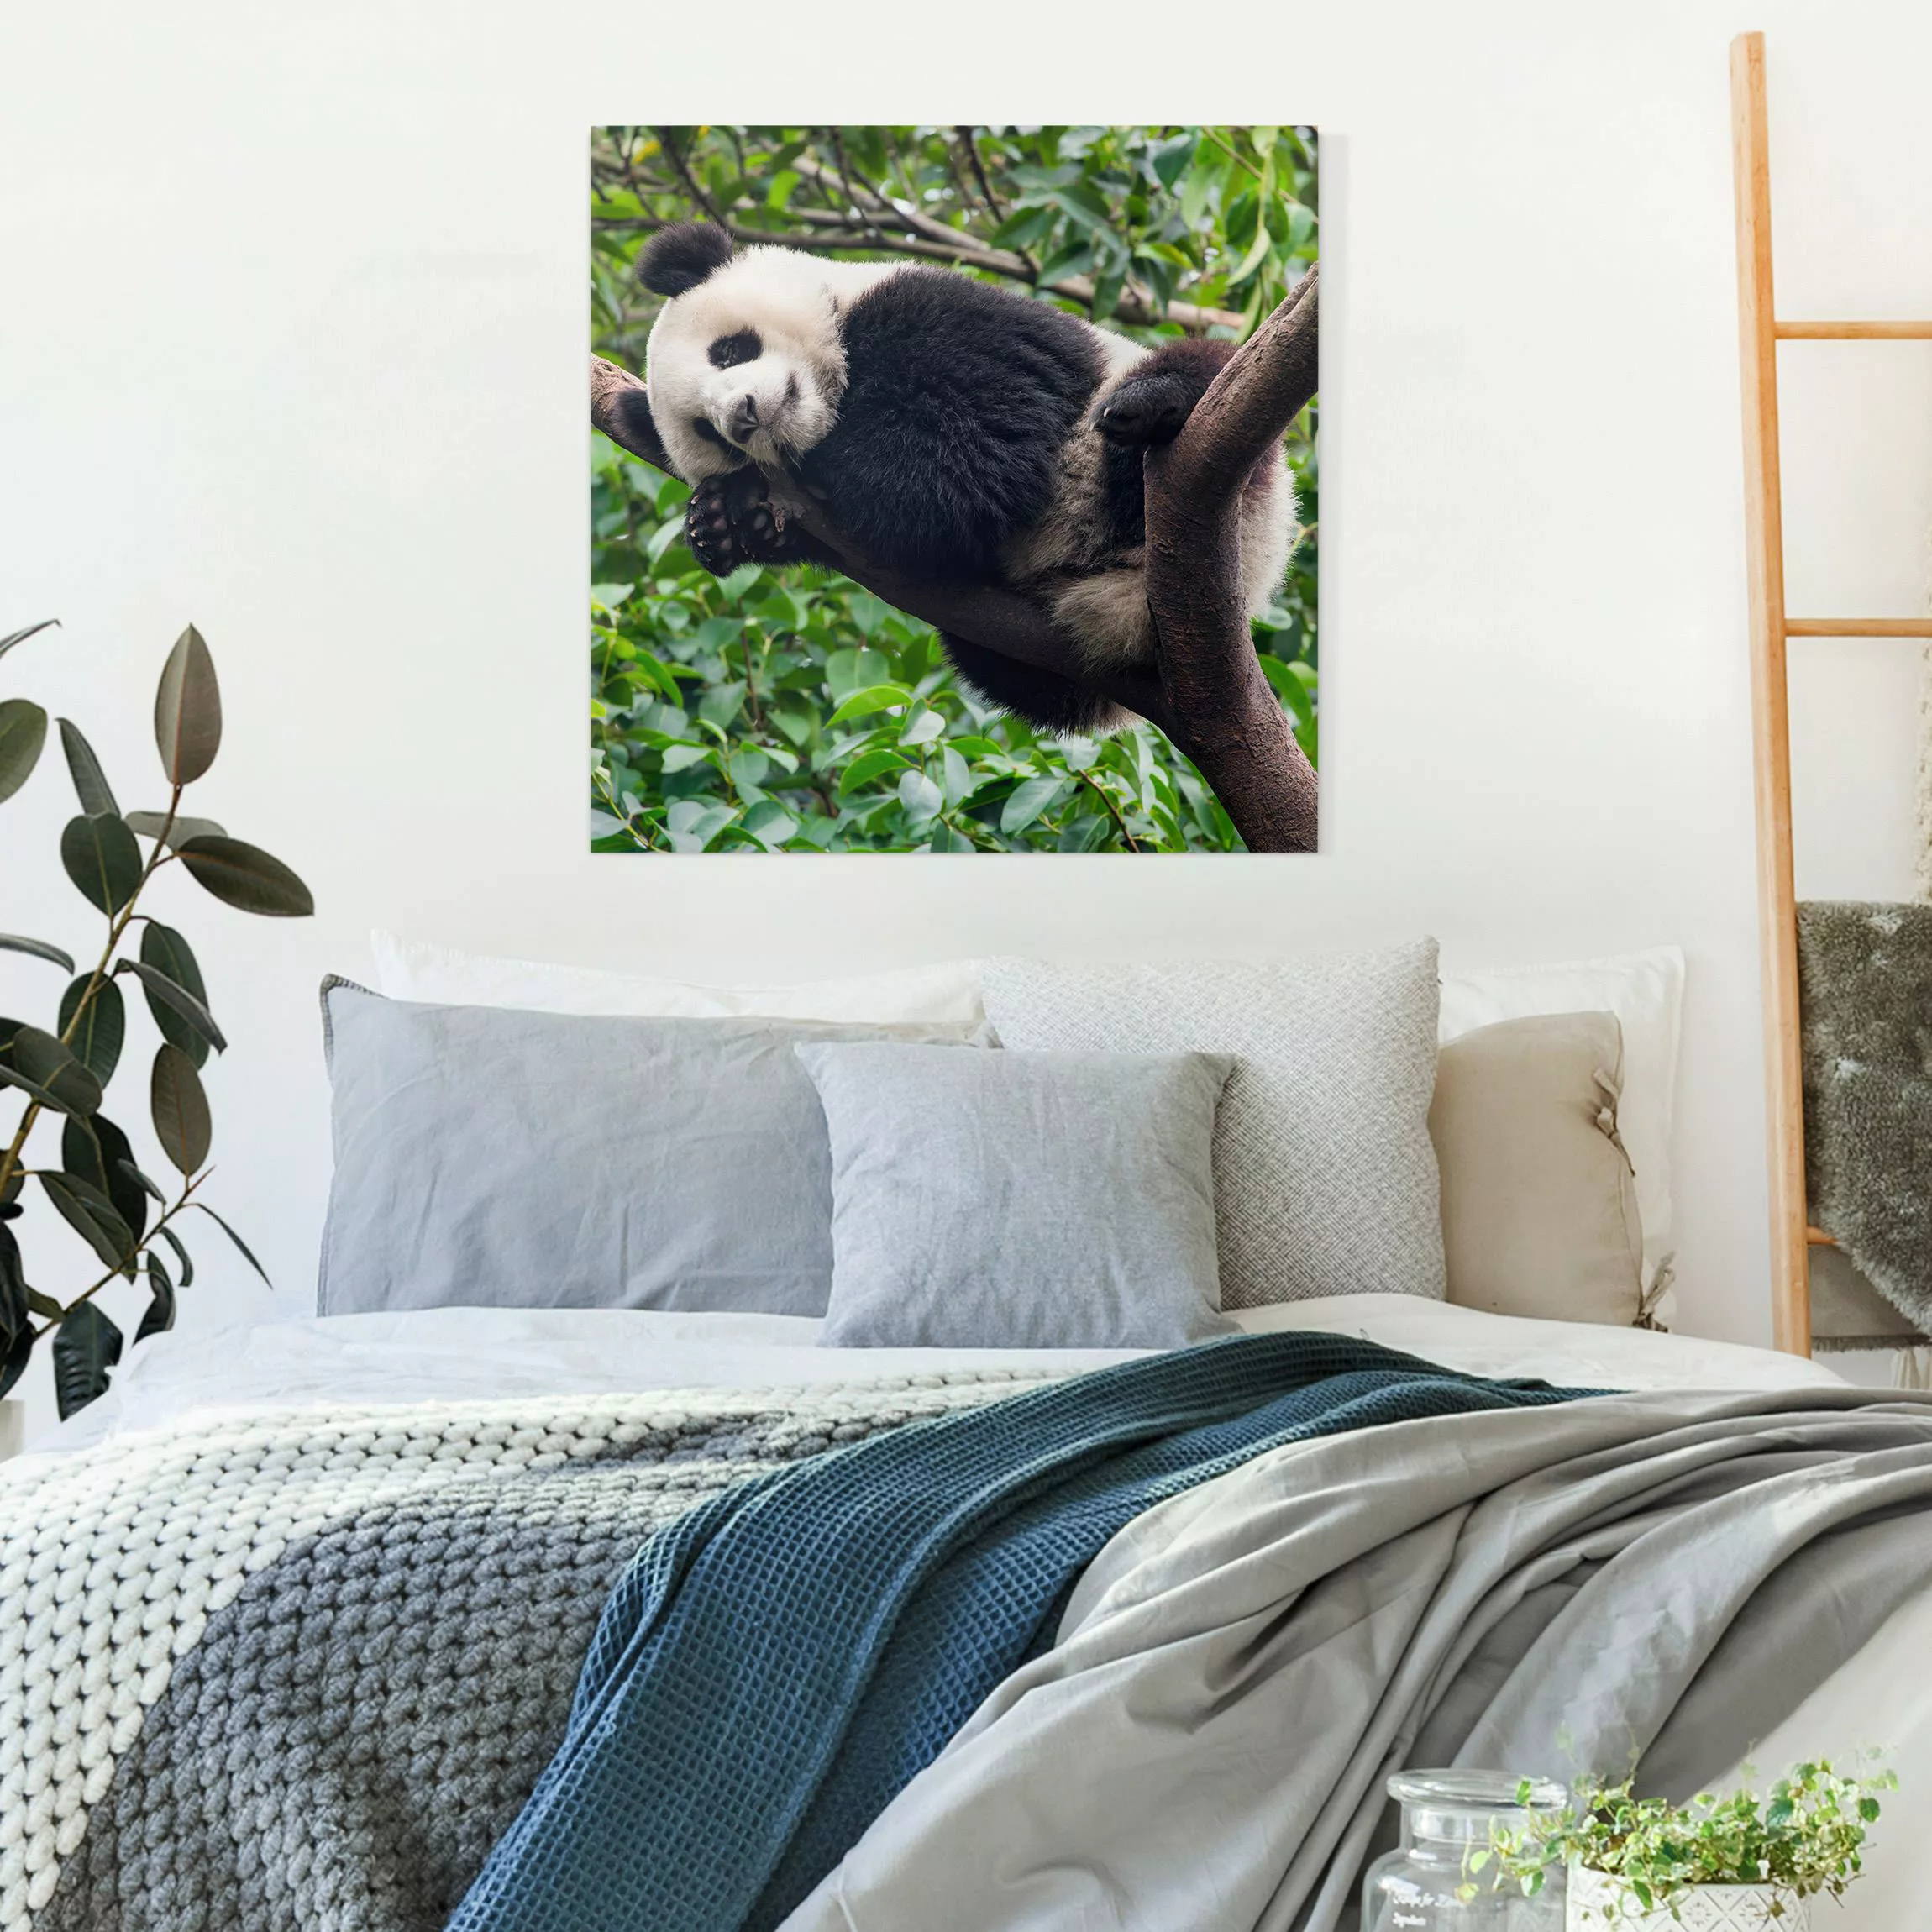 Leinwandbild Schlafender Panda auf Ast günstig online kaufen